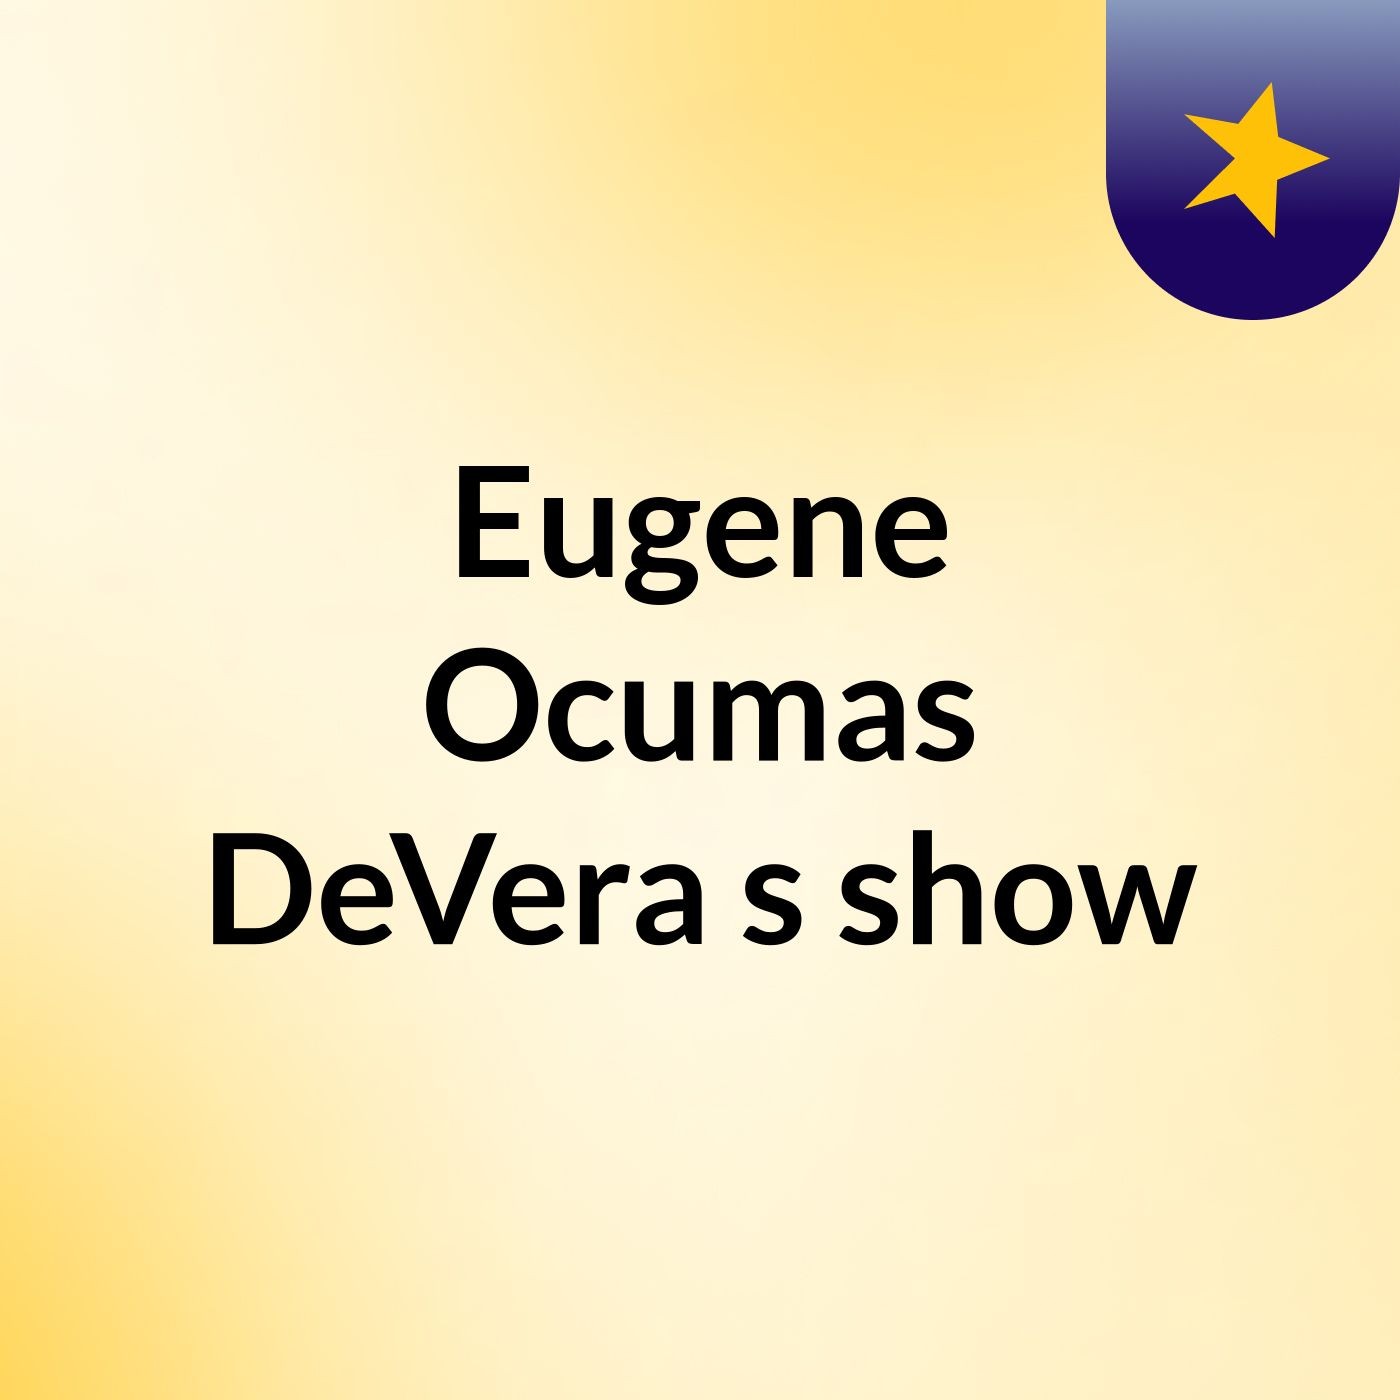 Episode 3 - Eugene Ocumas DeVera's show